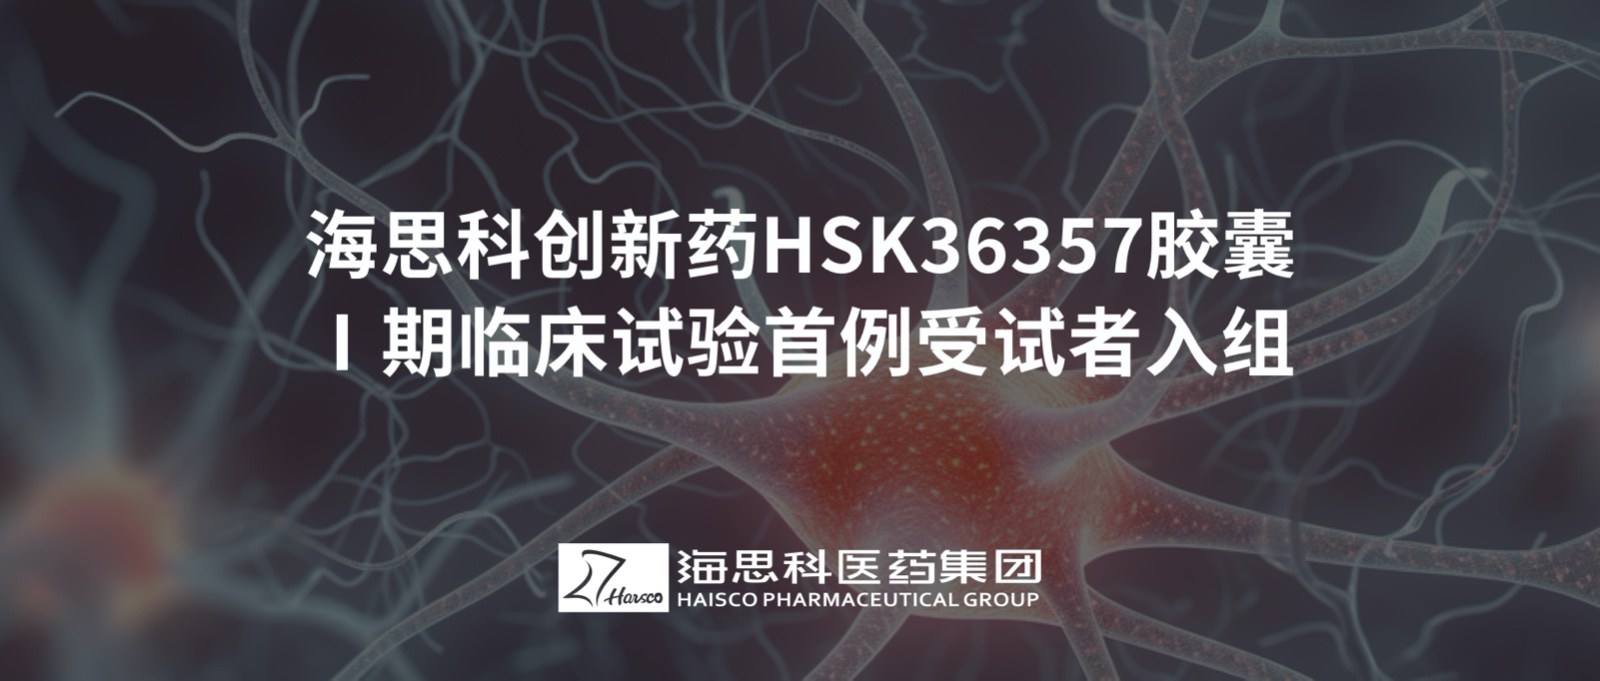 乐鱼游戏app正规版创新药HSK36357胶囊Ⅰ期临床试验首例受试者入组